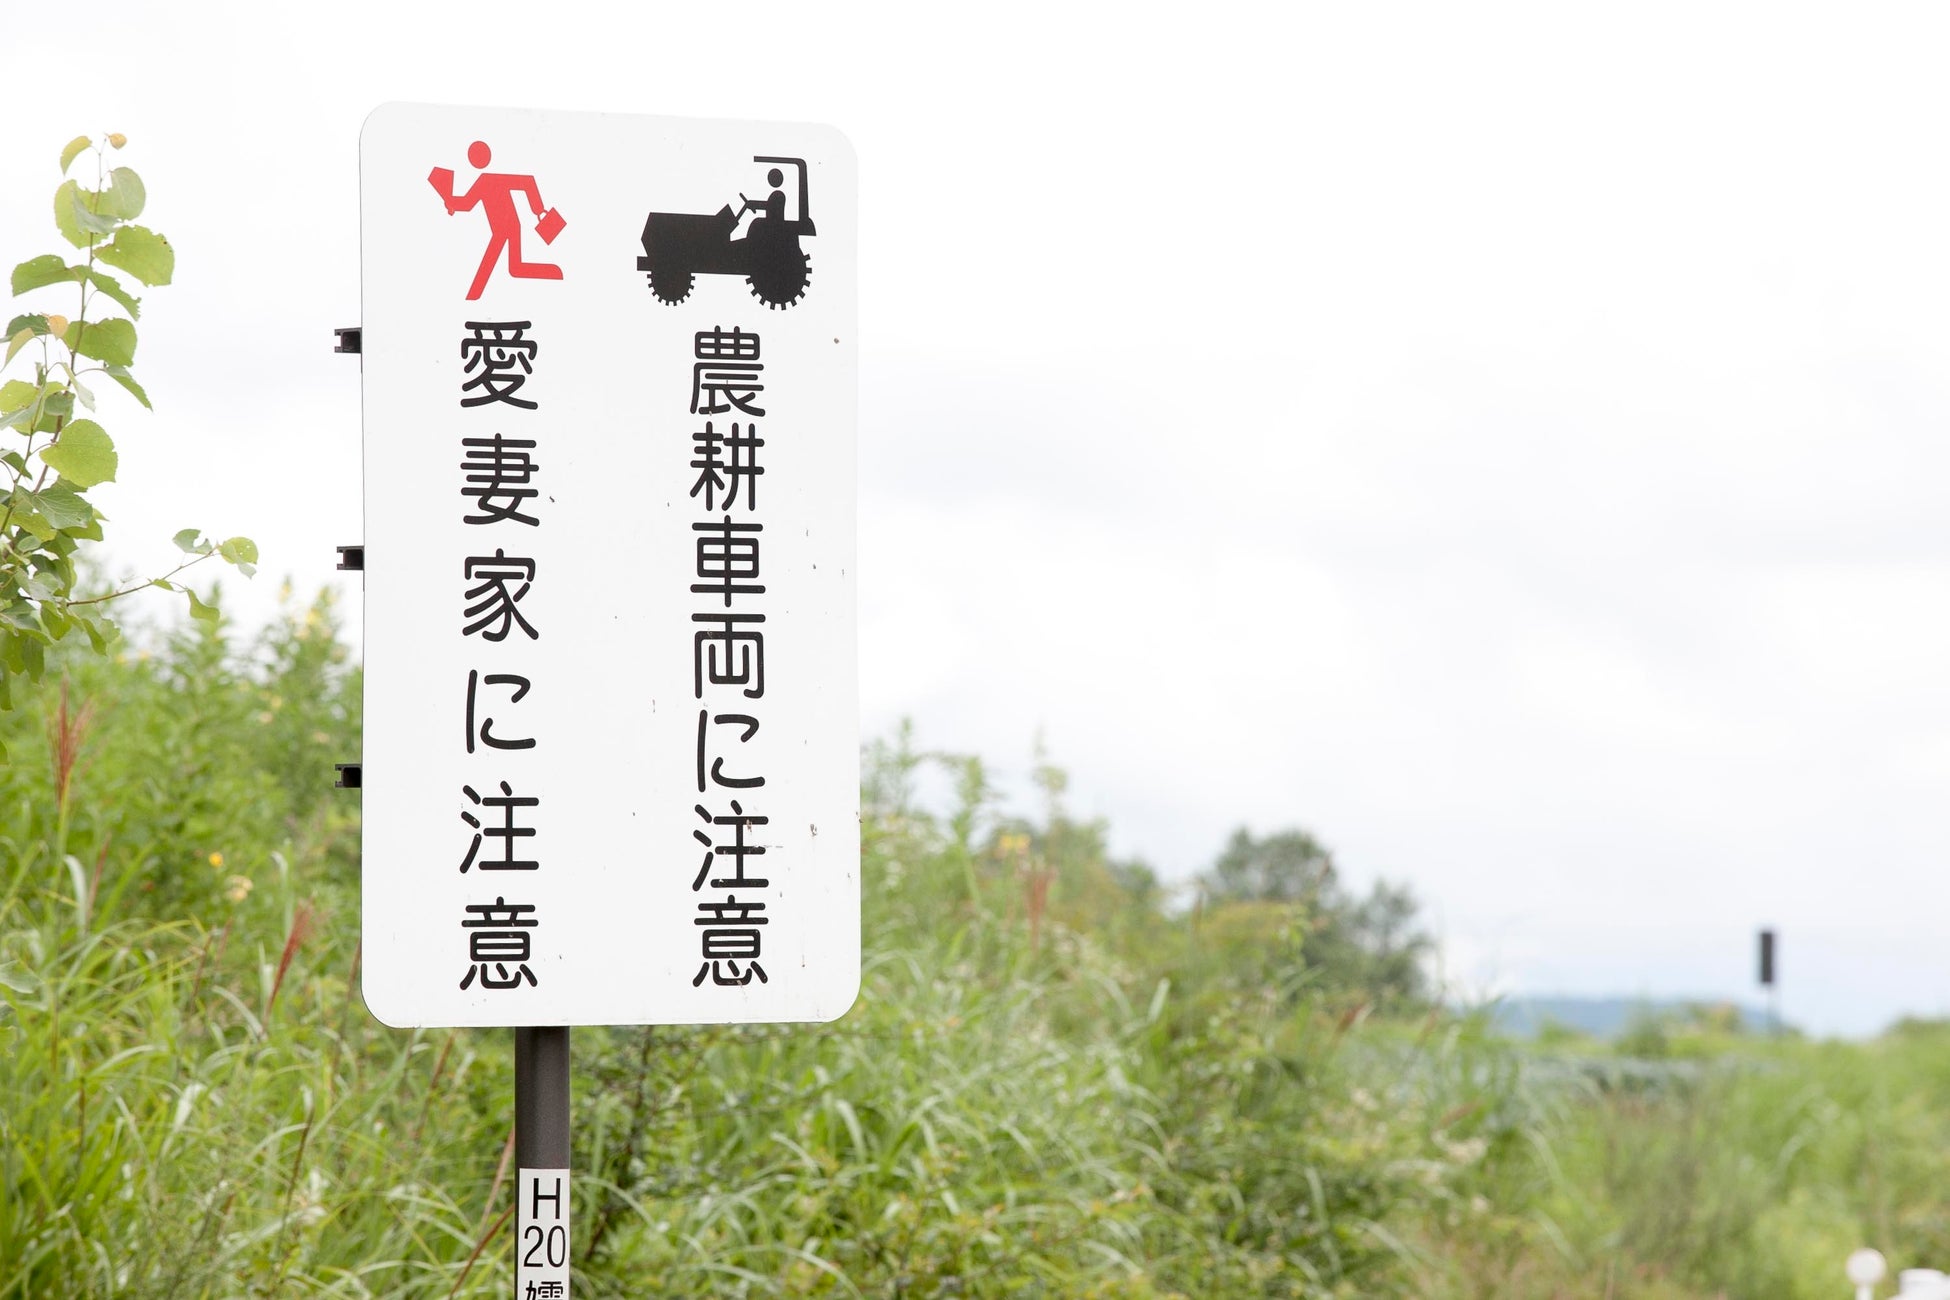 愛妻の丘付近にある珍しい標識「愛妻家に注意・農耕車両に注意」